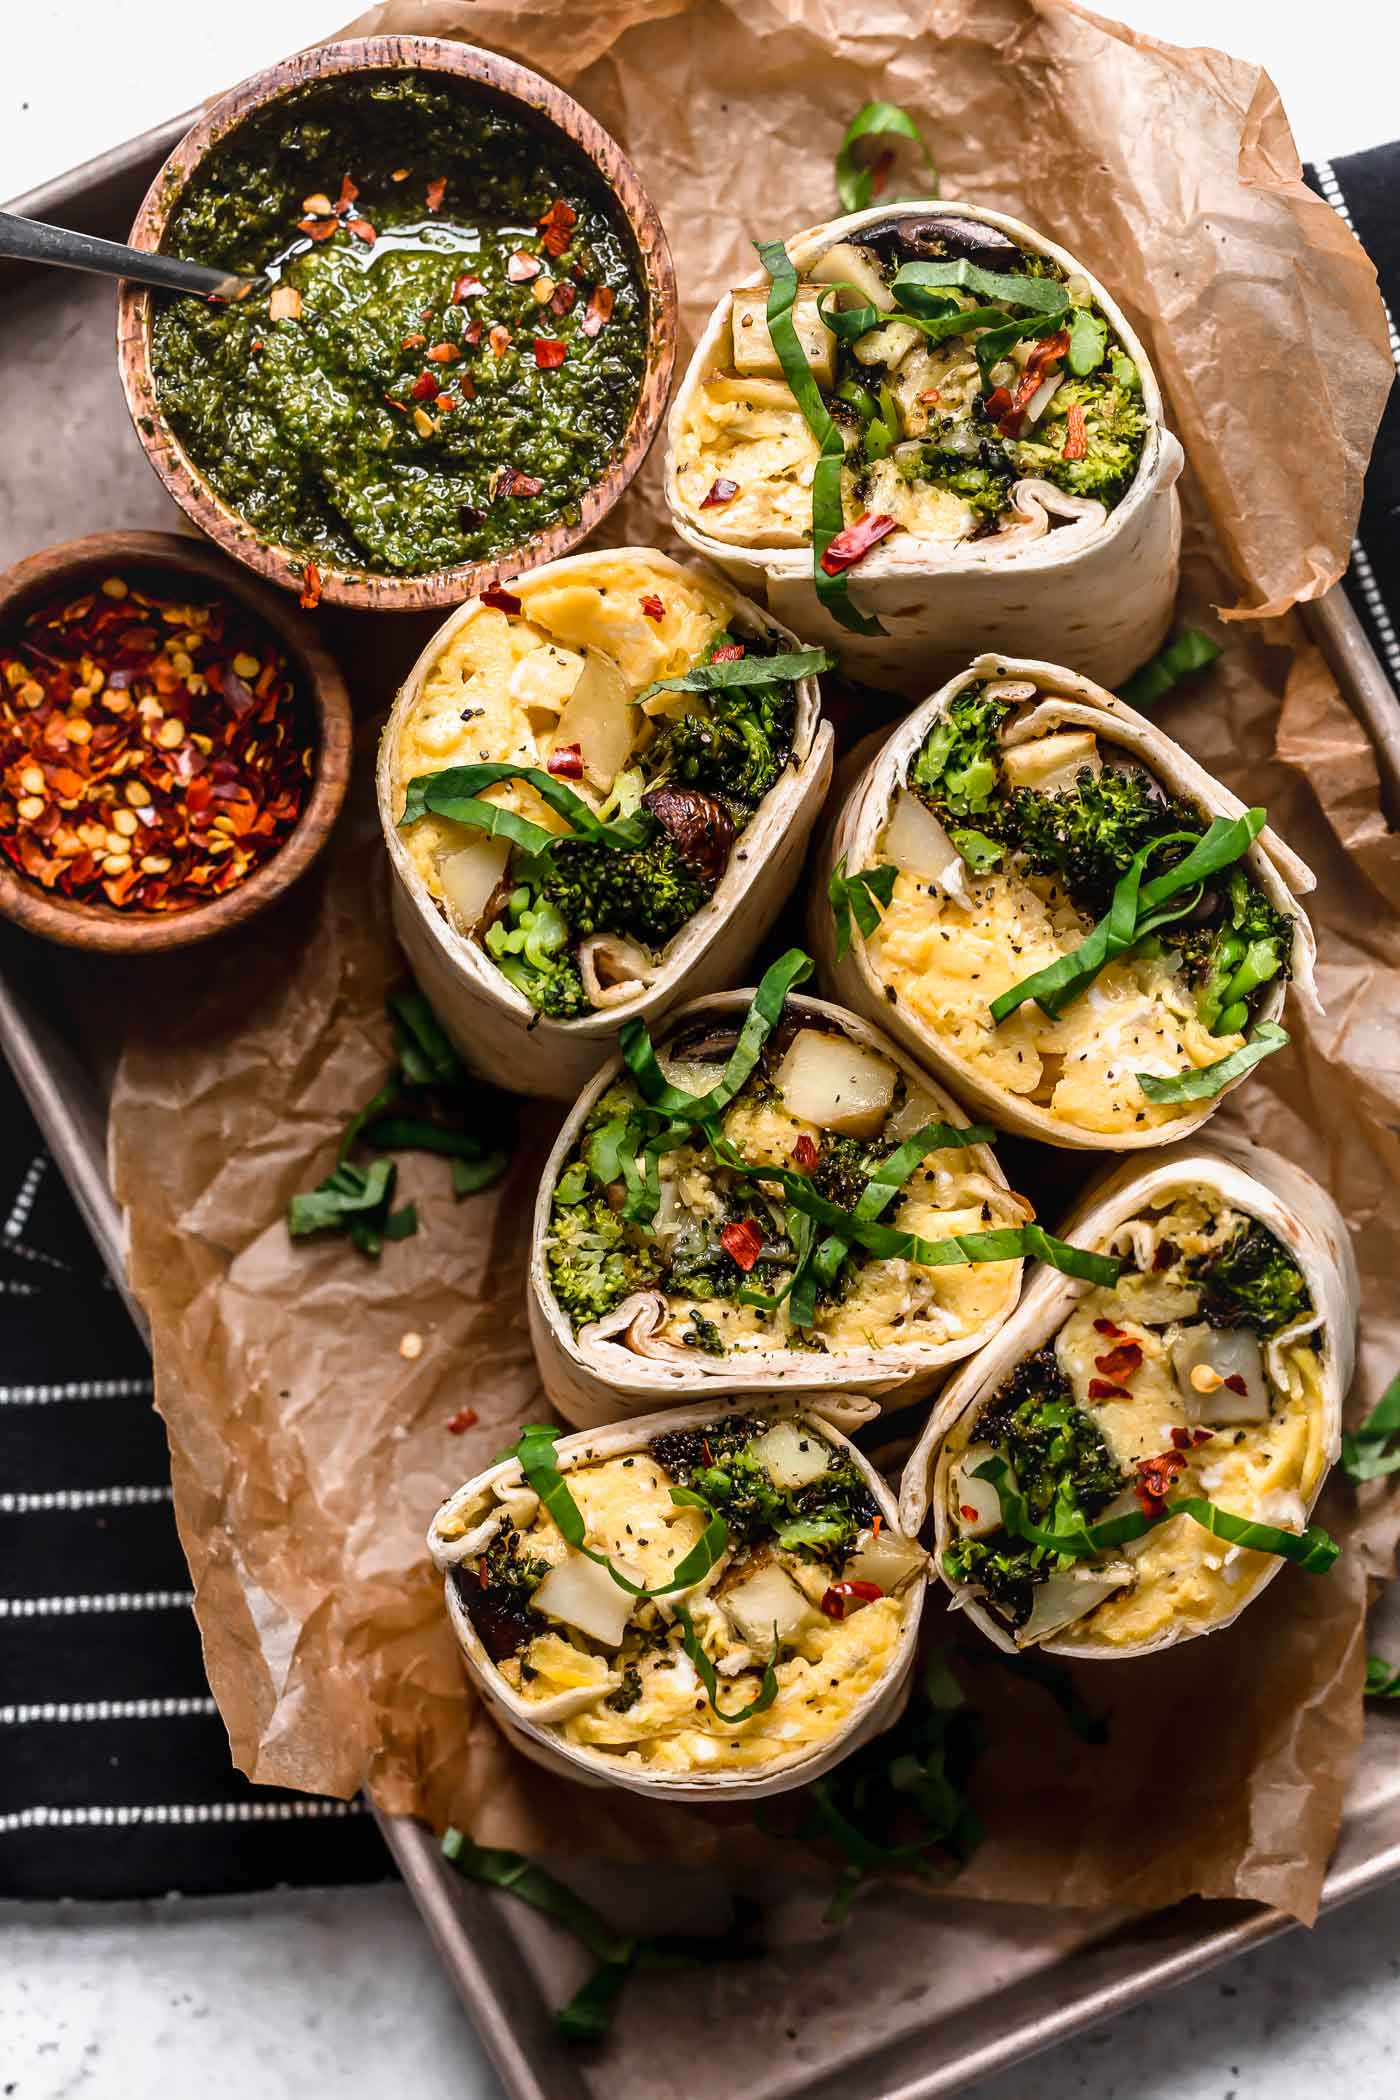 Vegetarian Burrito Recipes
 pesto ve arian breakfast burritos freezer friendly